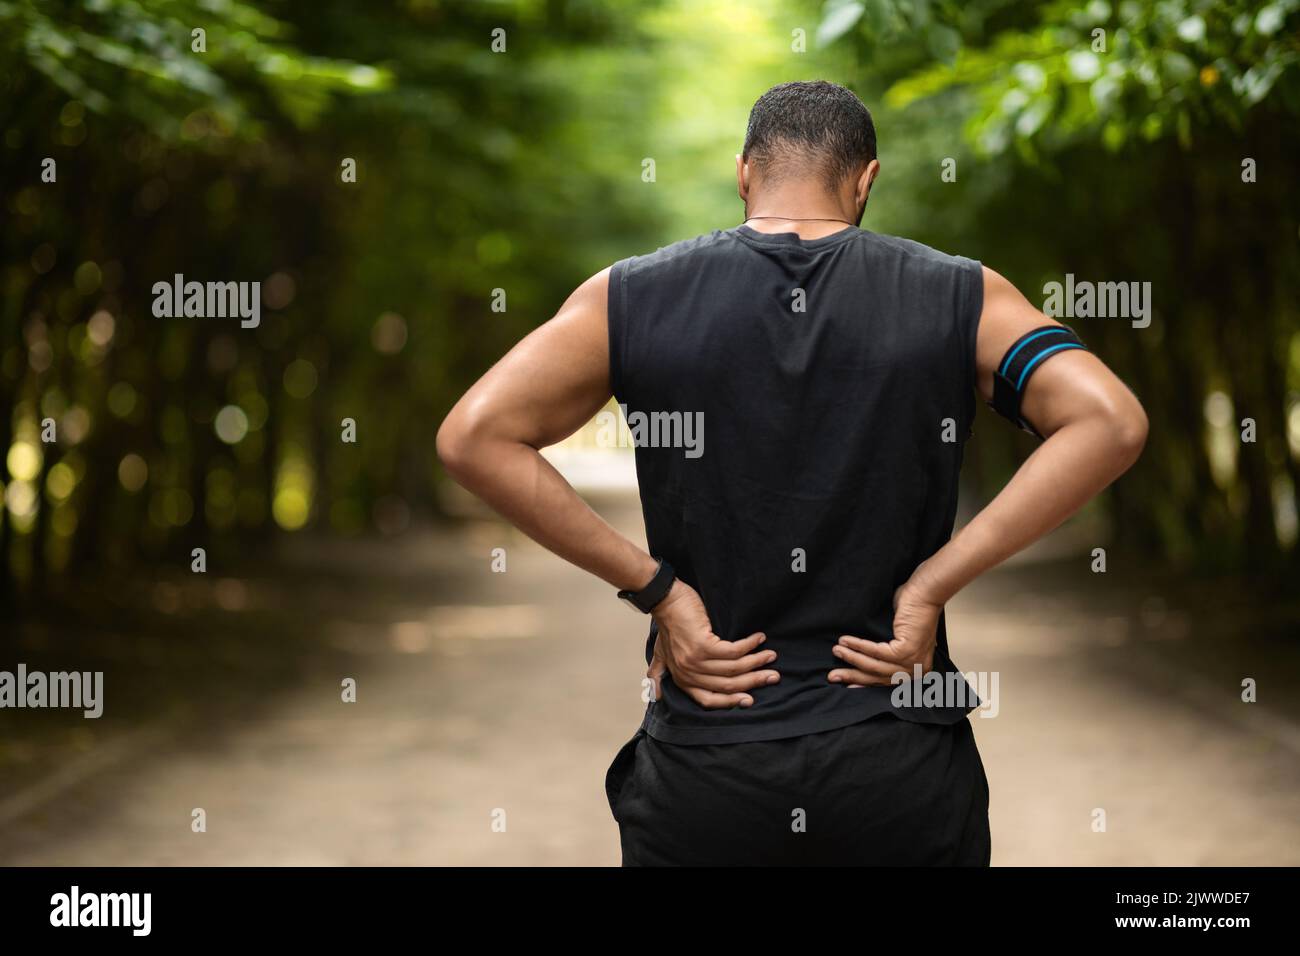 Vue arrière d'un sportif touchant la zone douloureuse sur son dos Banque D'Images